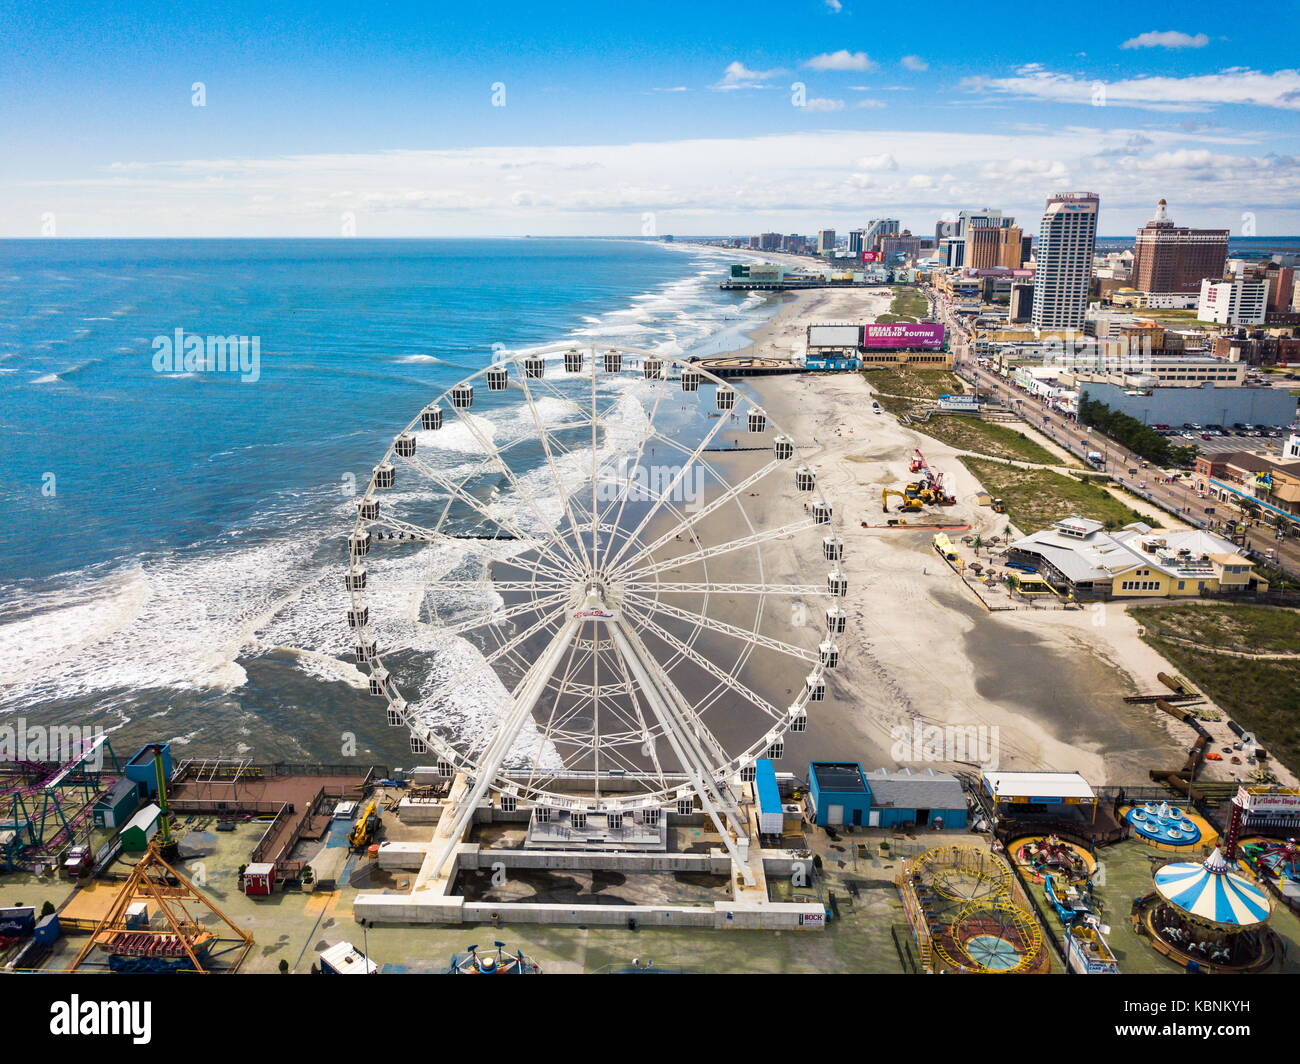 Atlantic City, Stati Uniti d'America - 20 settembre 2017: Atlantic City linea di galleggiamento vista aerea. ac è una città turistica nel new jersey e famosa per i suoi casinò, passerelle, un Foto Stock